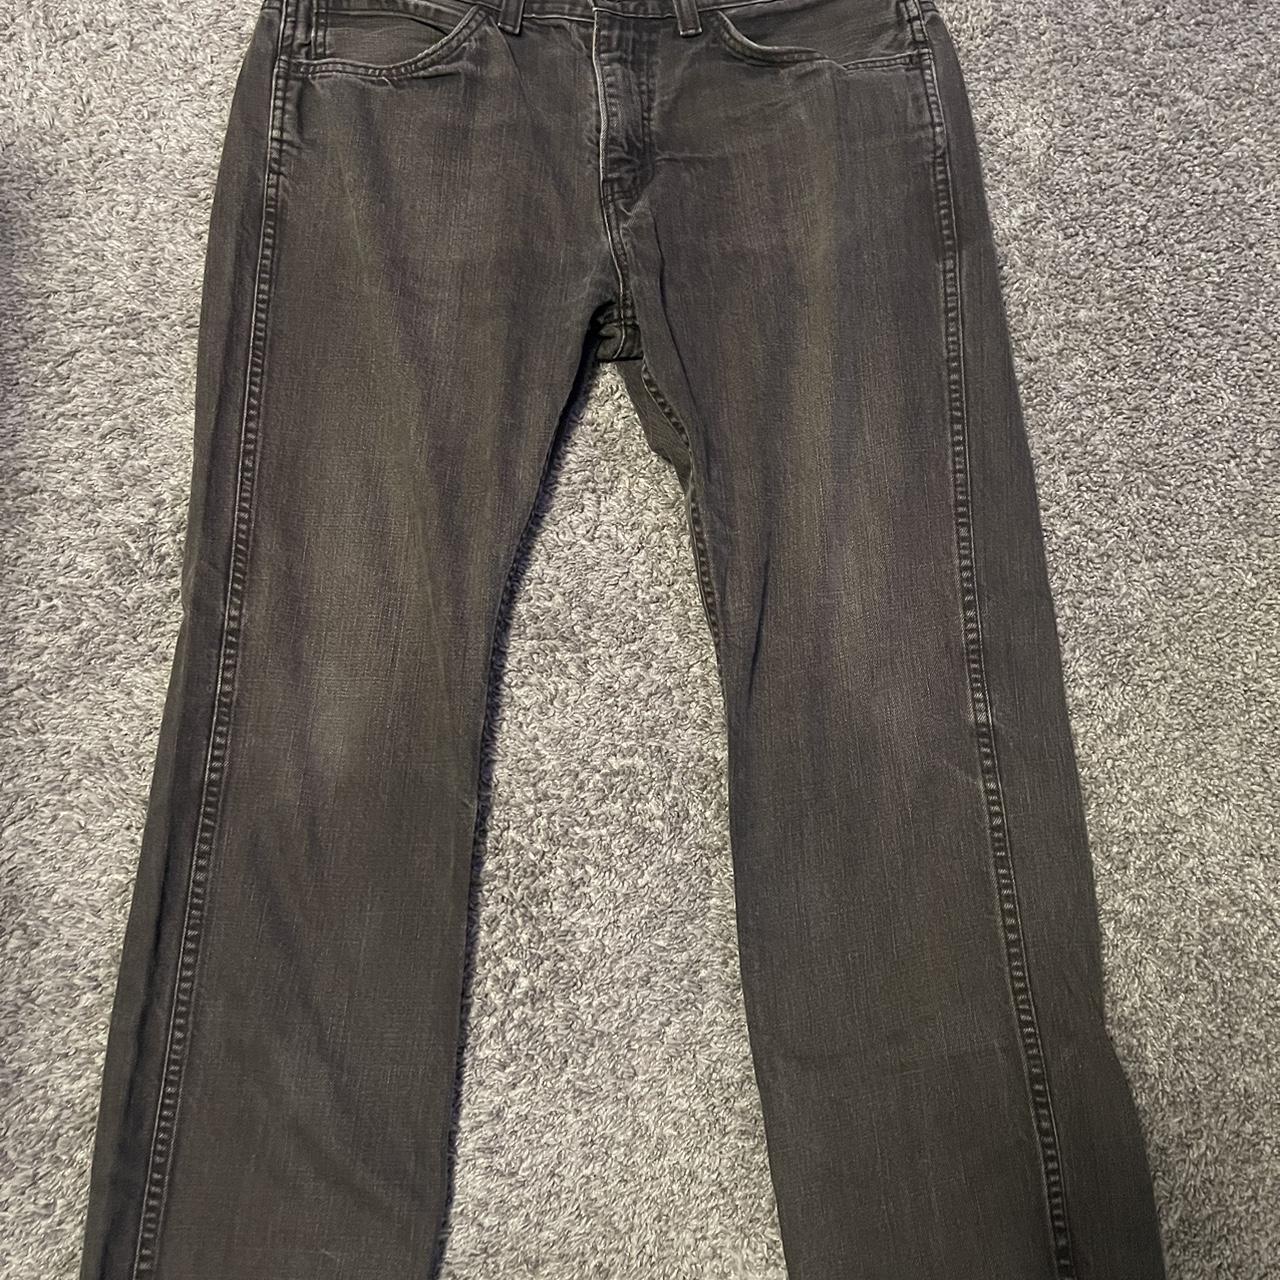 Vintage Washed levi’s jeans size 36x30 baggy... - Depop